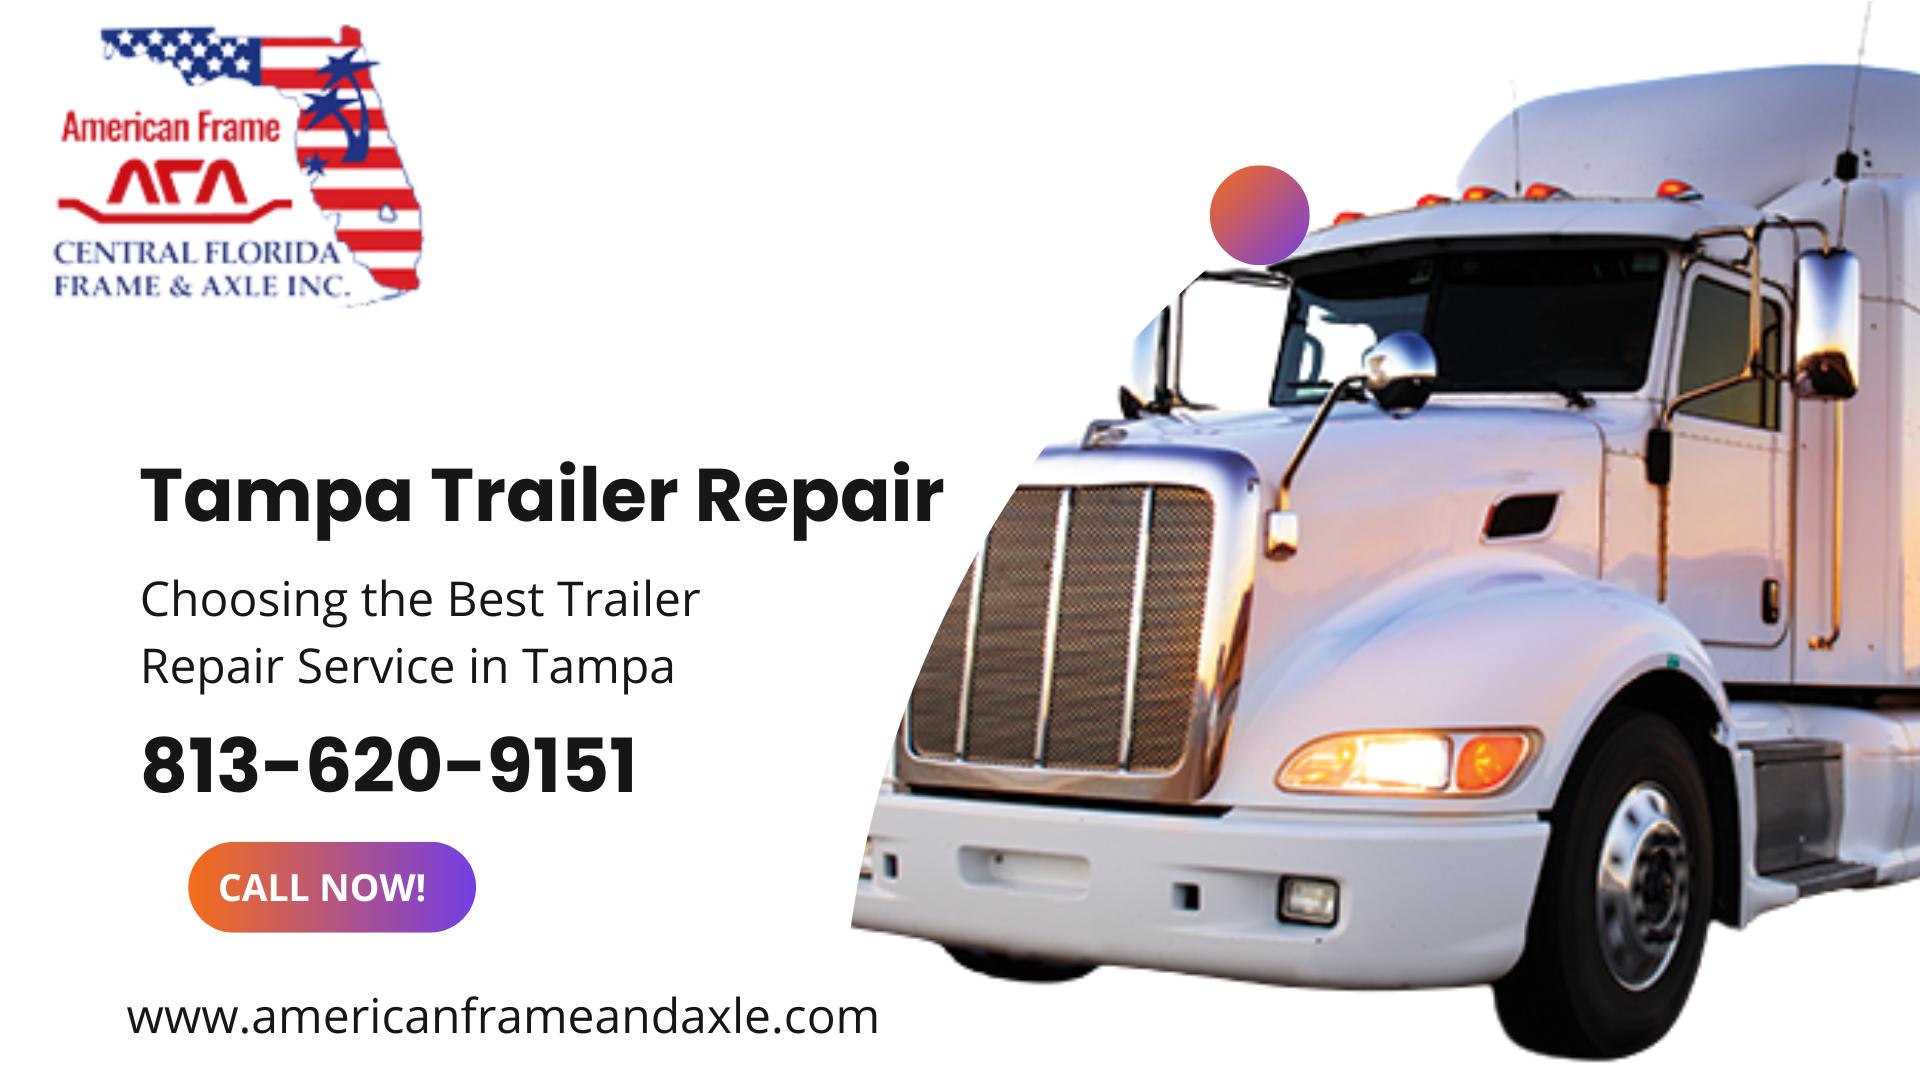 Tampa Trailer Repair